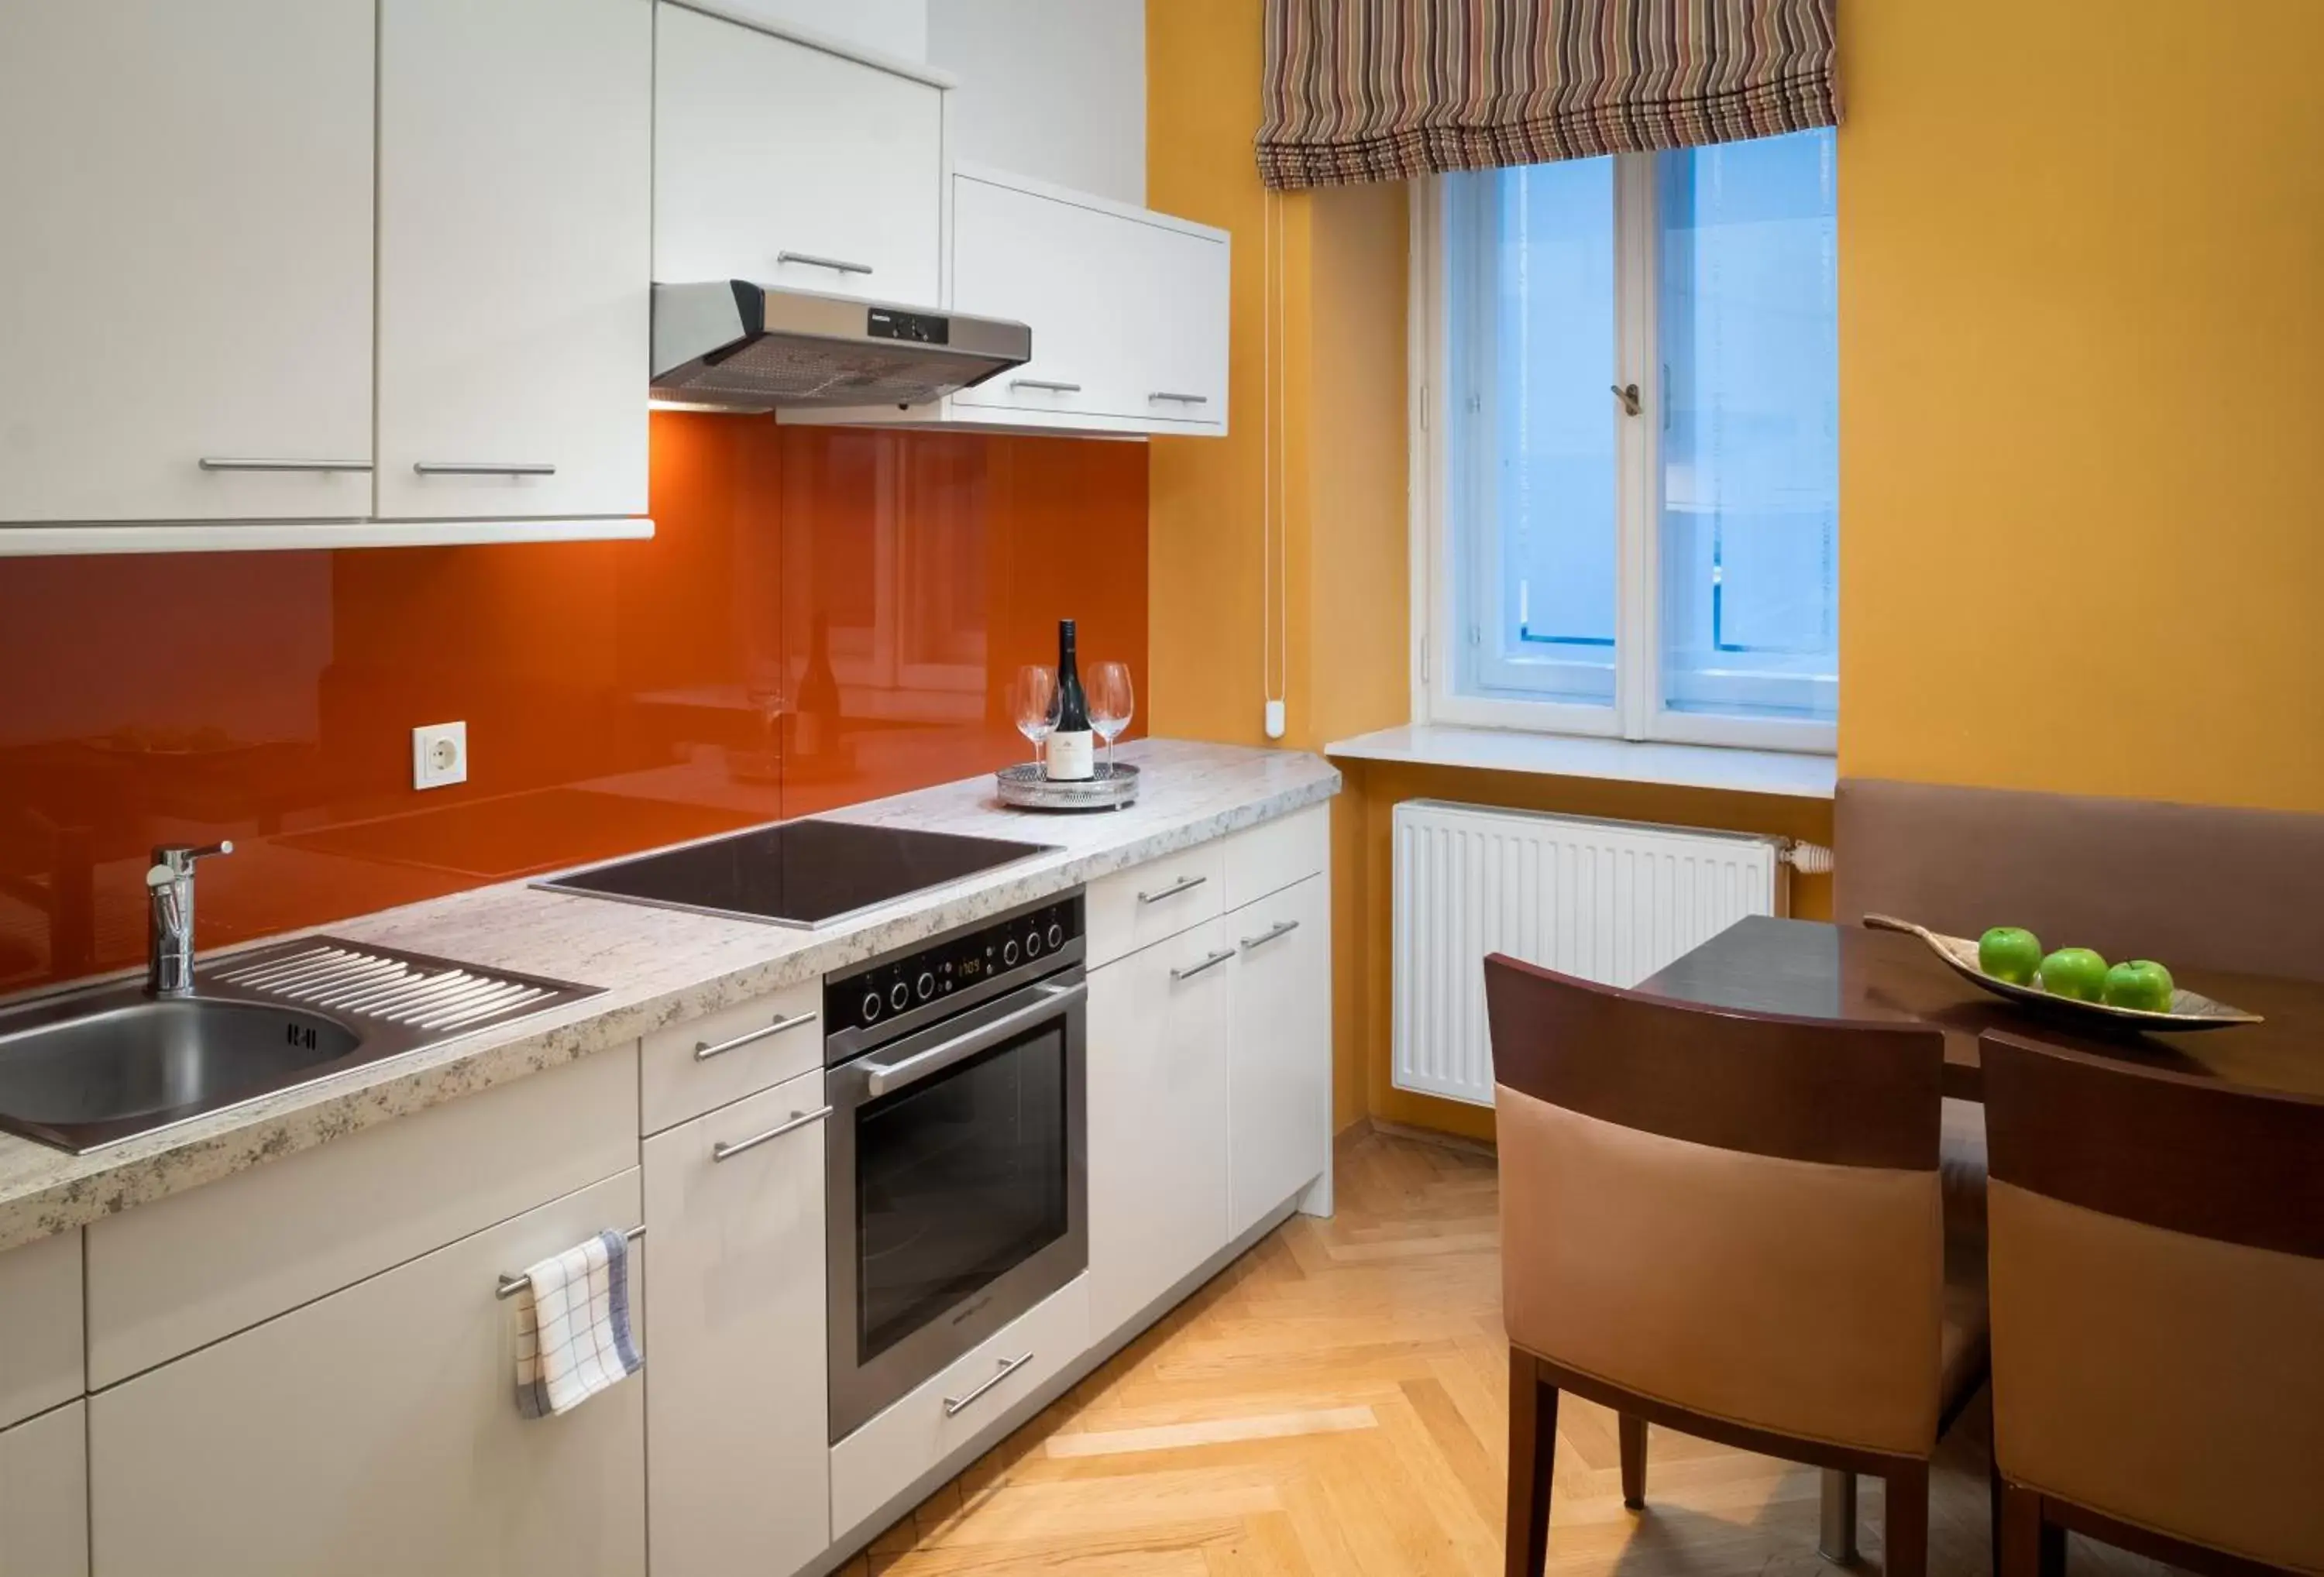 Kitchen or kitchenette, Kitchen/Kitchenette in Appartement-Hotel an der Riemergasse